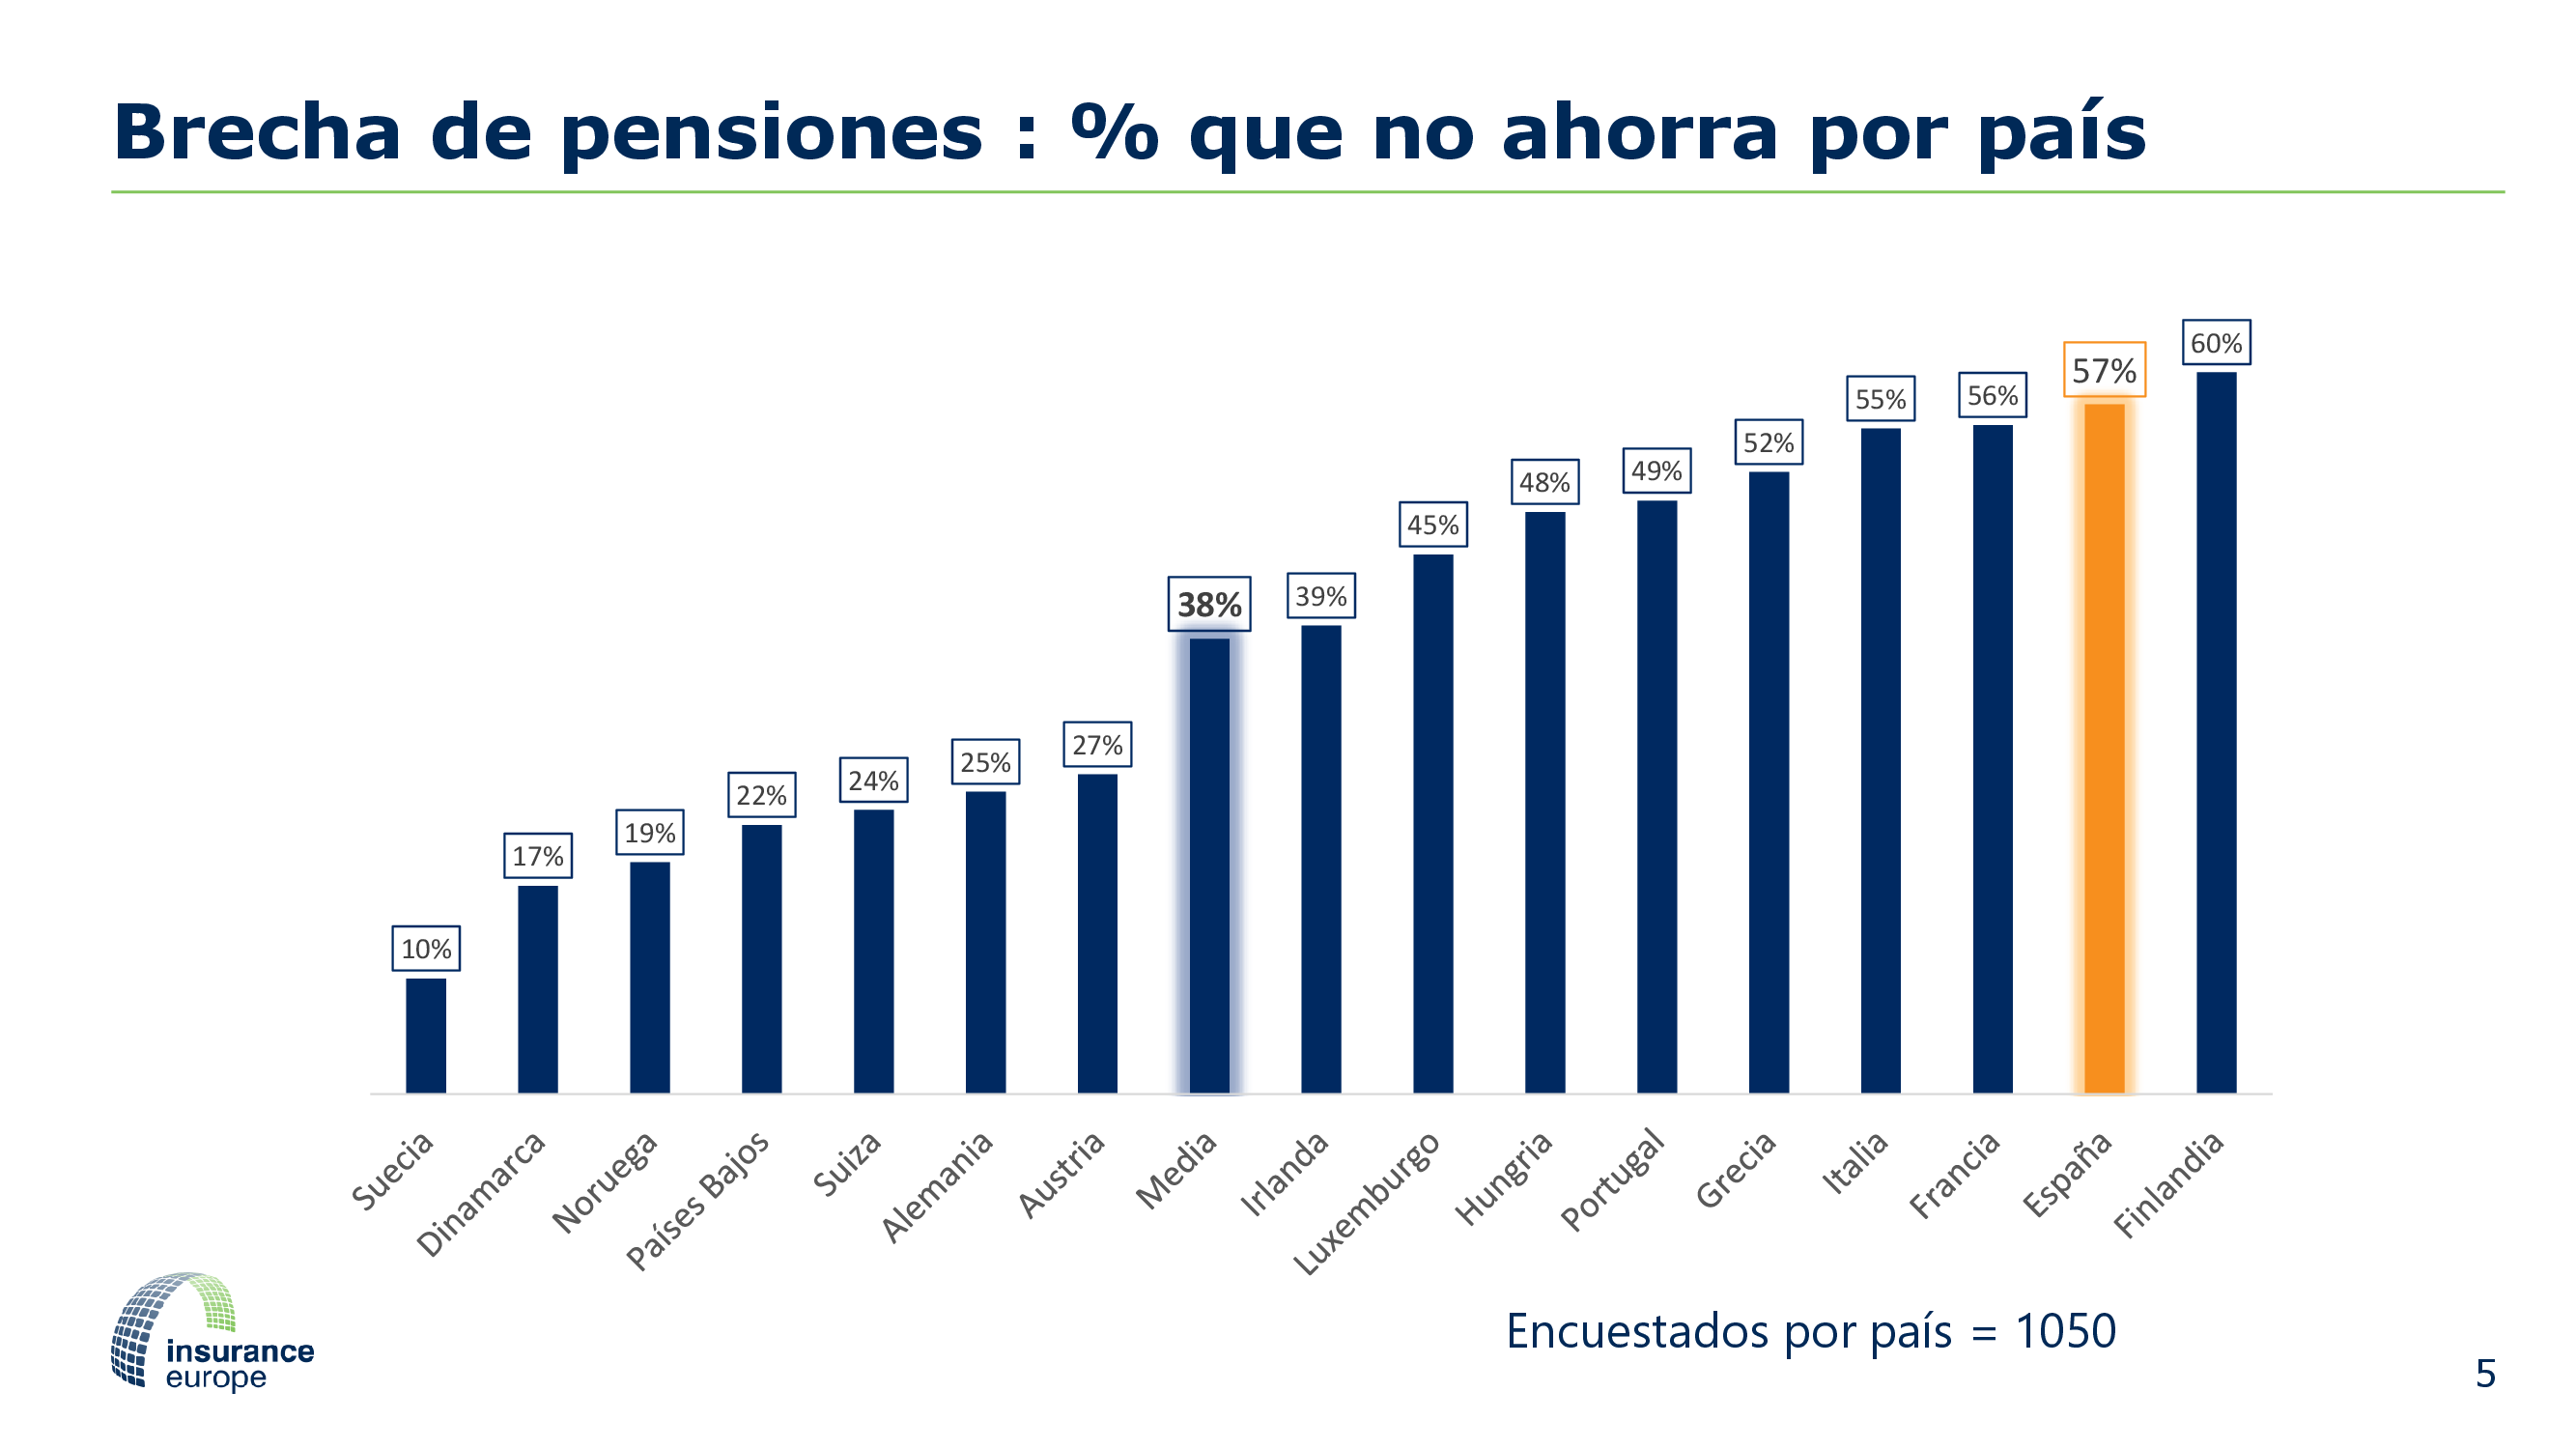 Encuesta paneuropea de pensiones - Brecha de pensiones, porcentaje que no ahorra por país